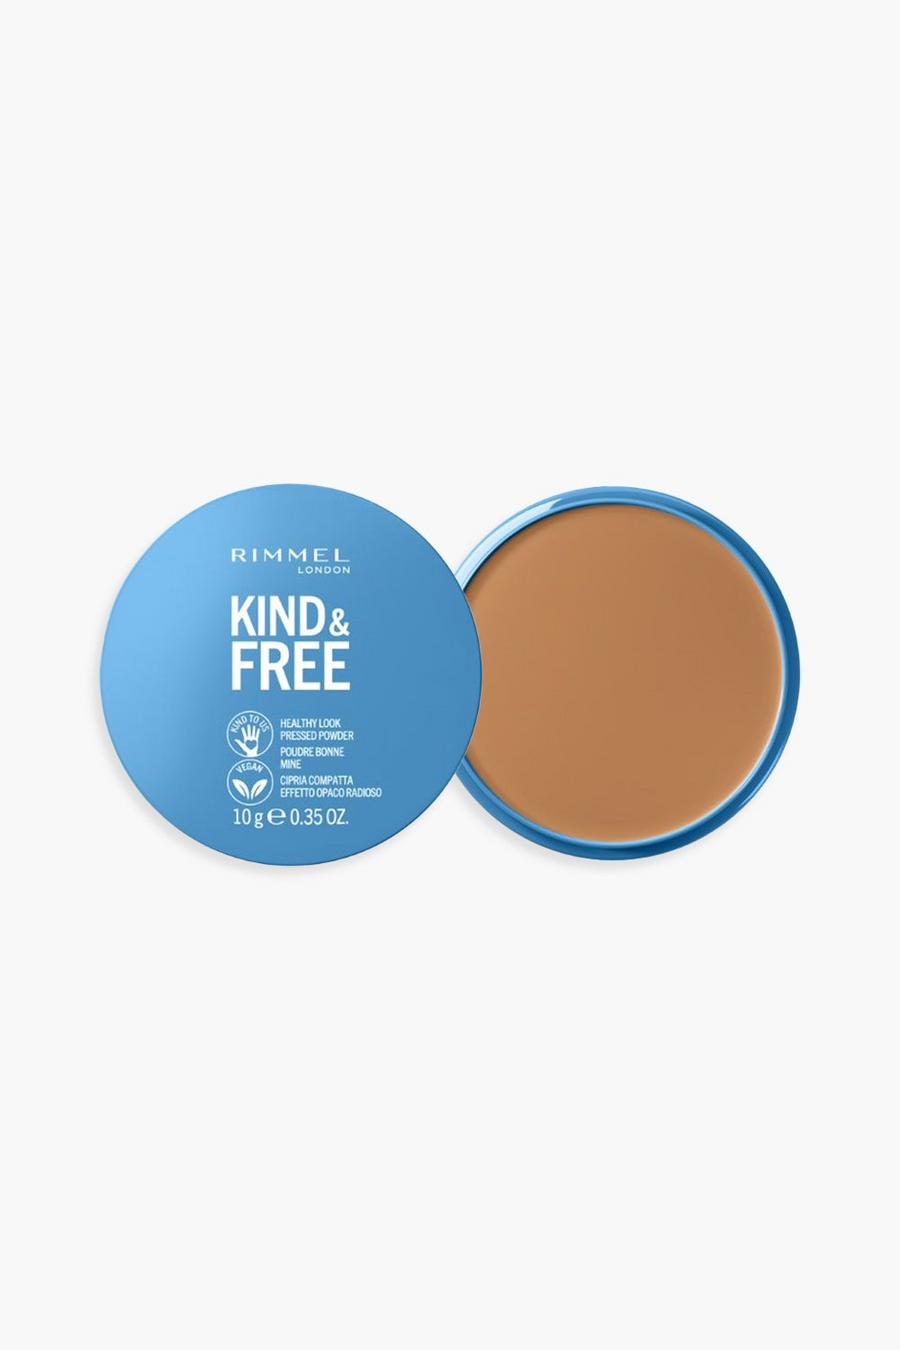 Rimmel Kind & Free Pressed Powder Tan